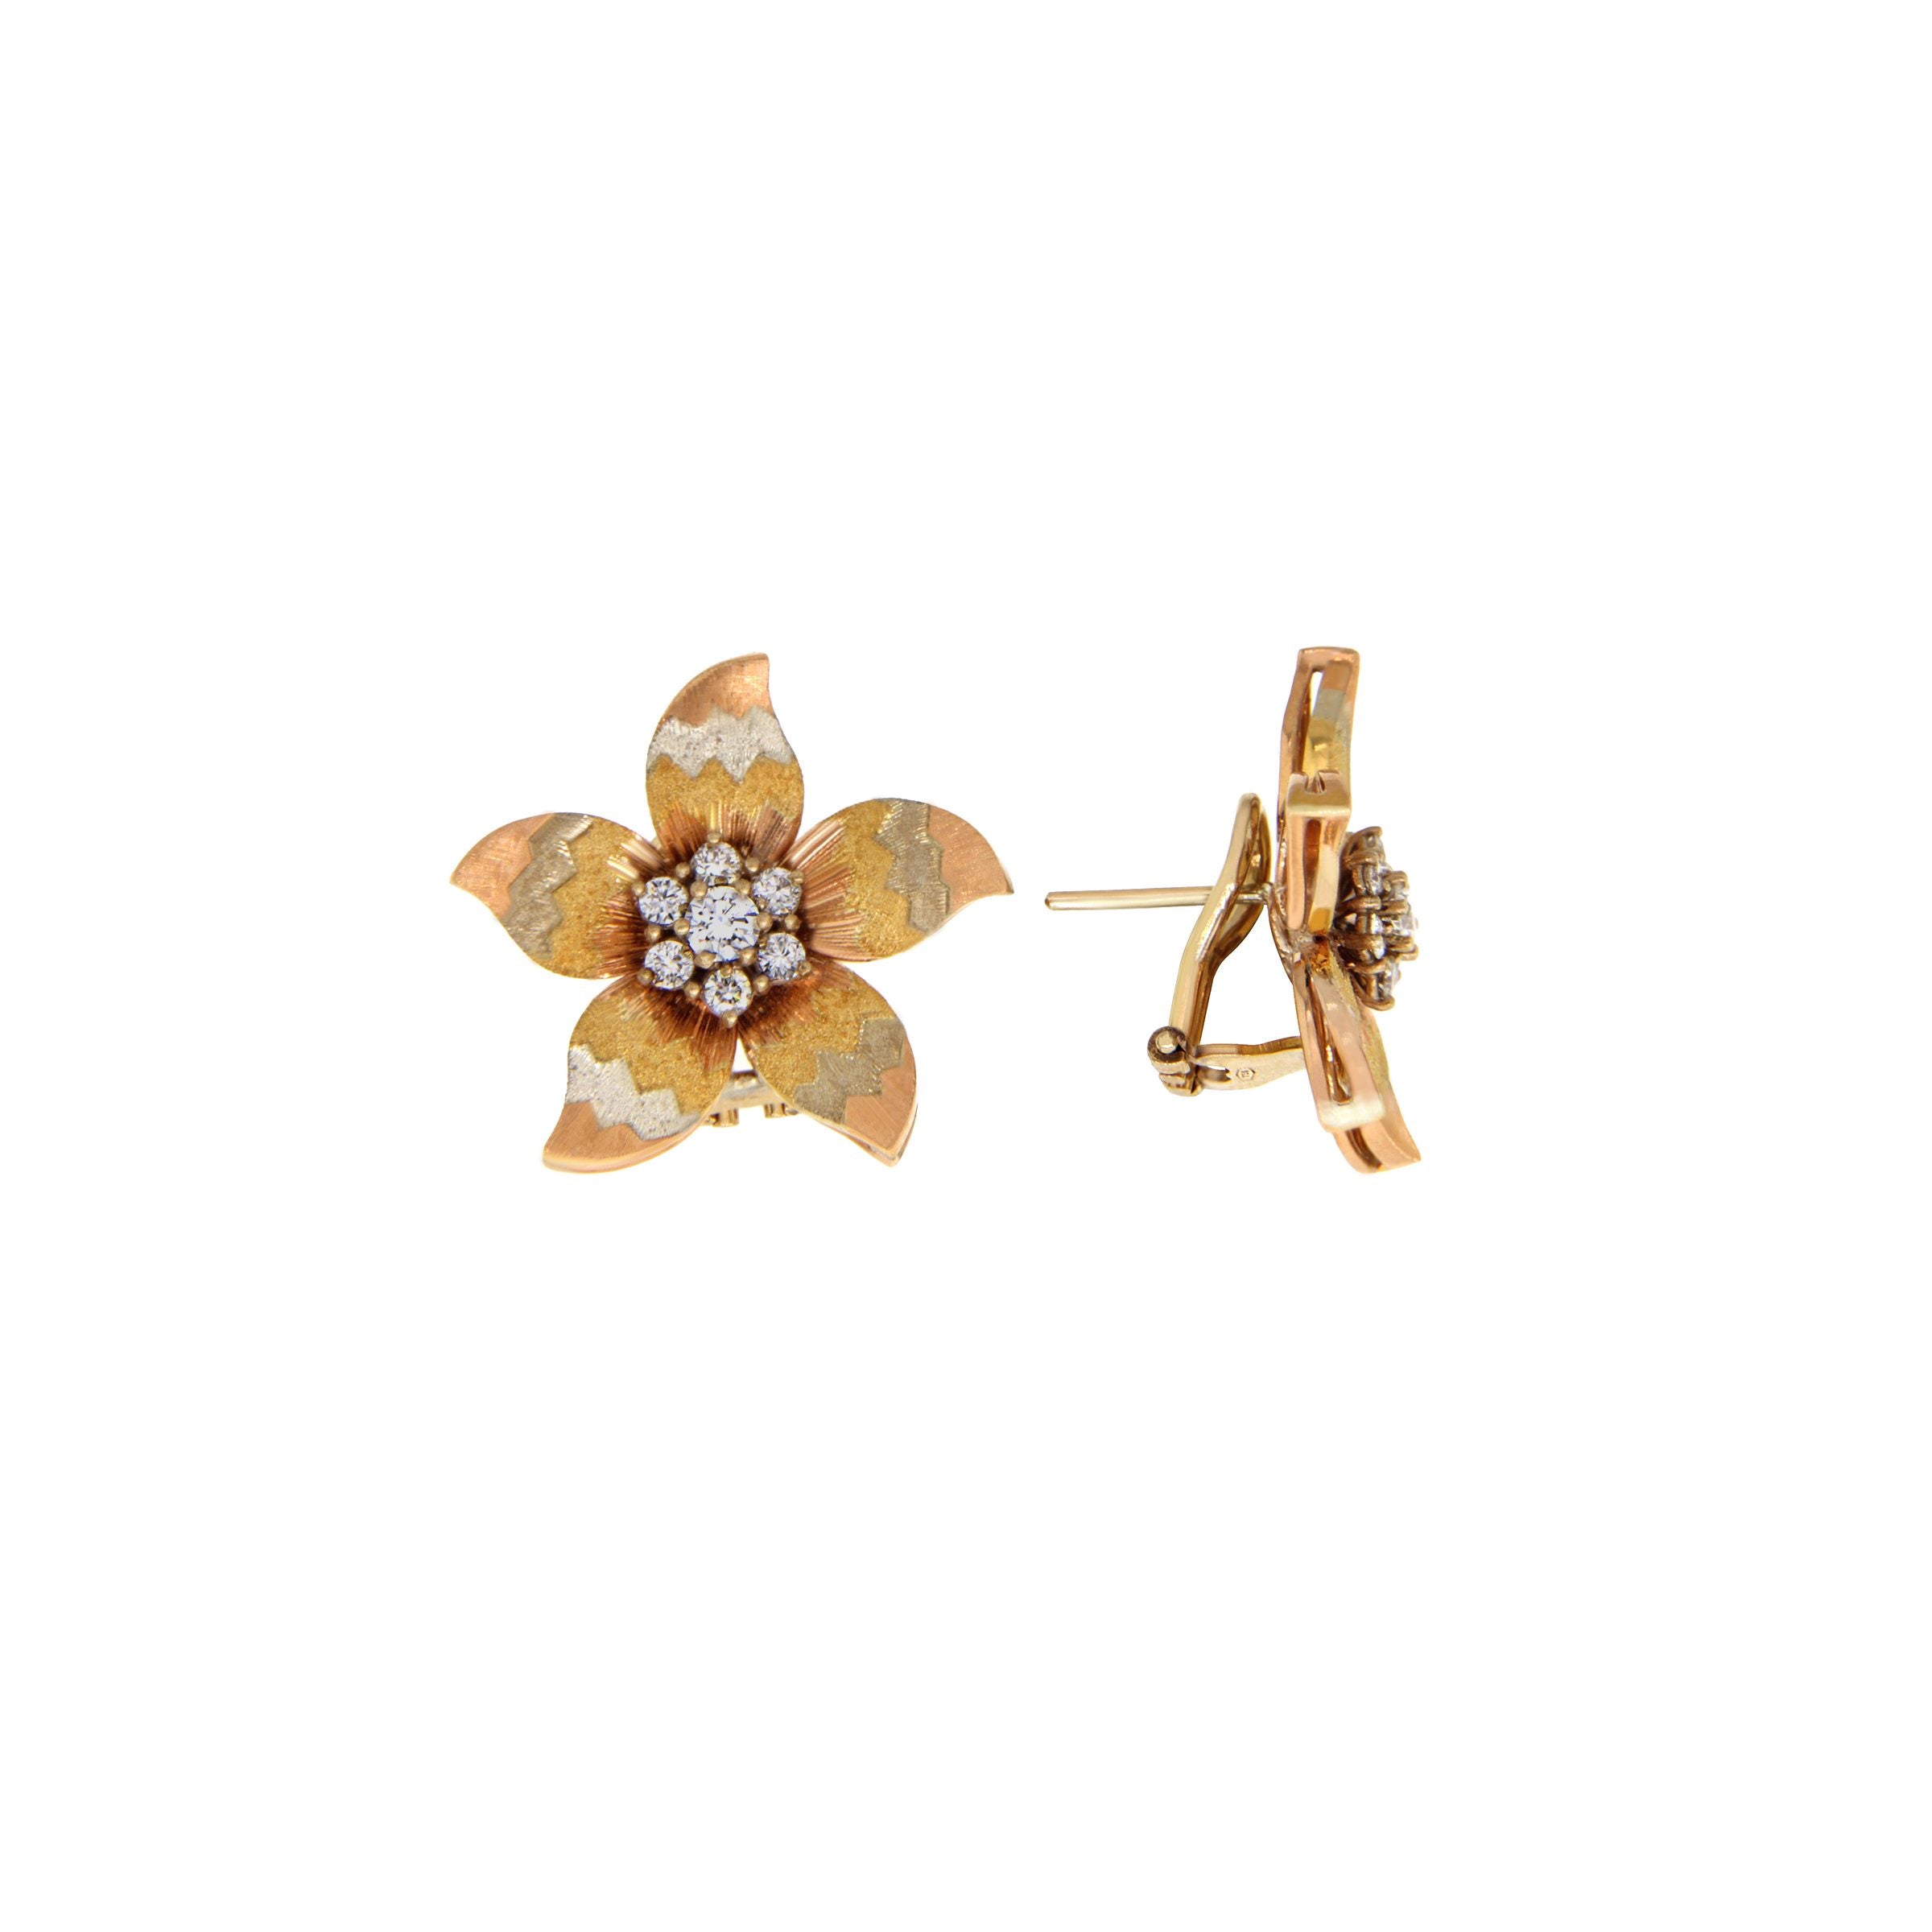 Buy Elaborate Rose Gold Earrings Online | ORRA